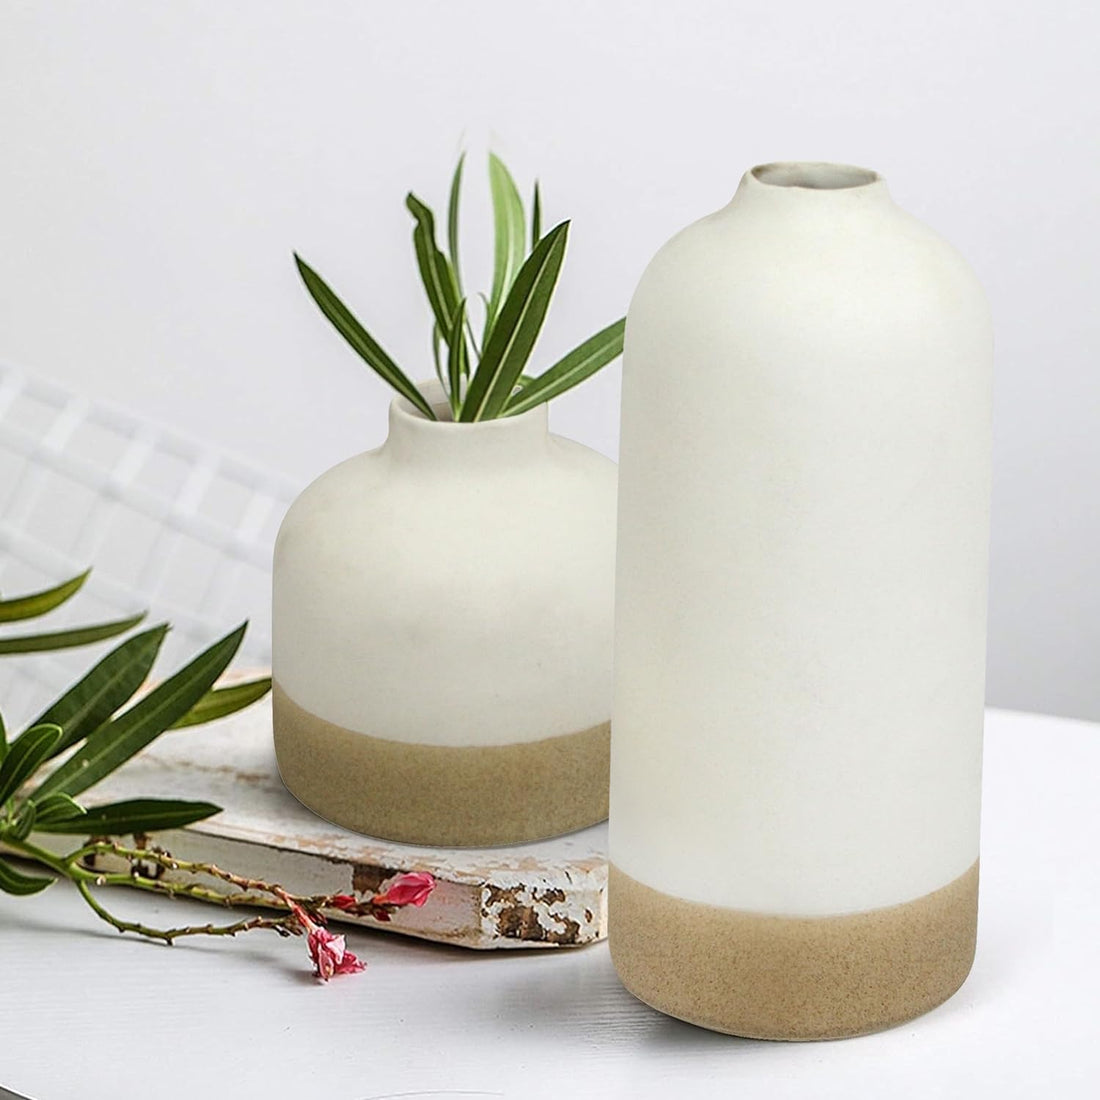 Decorative Ceramic Flower Vases - Multi-Colored, 9.8 & 5.5 Inches Set of 2